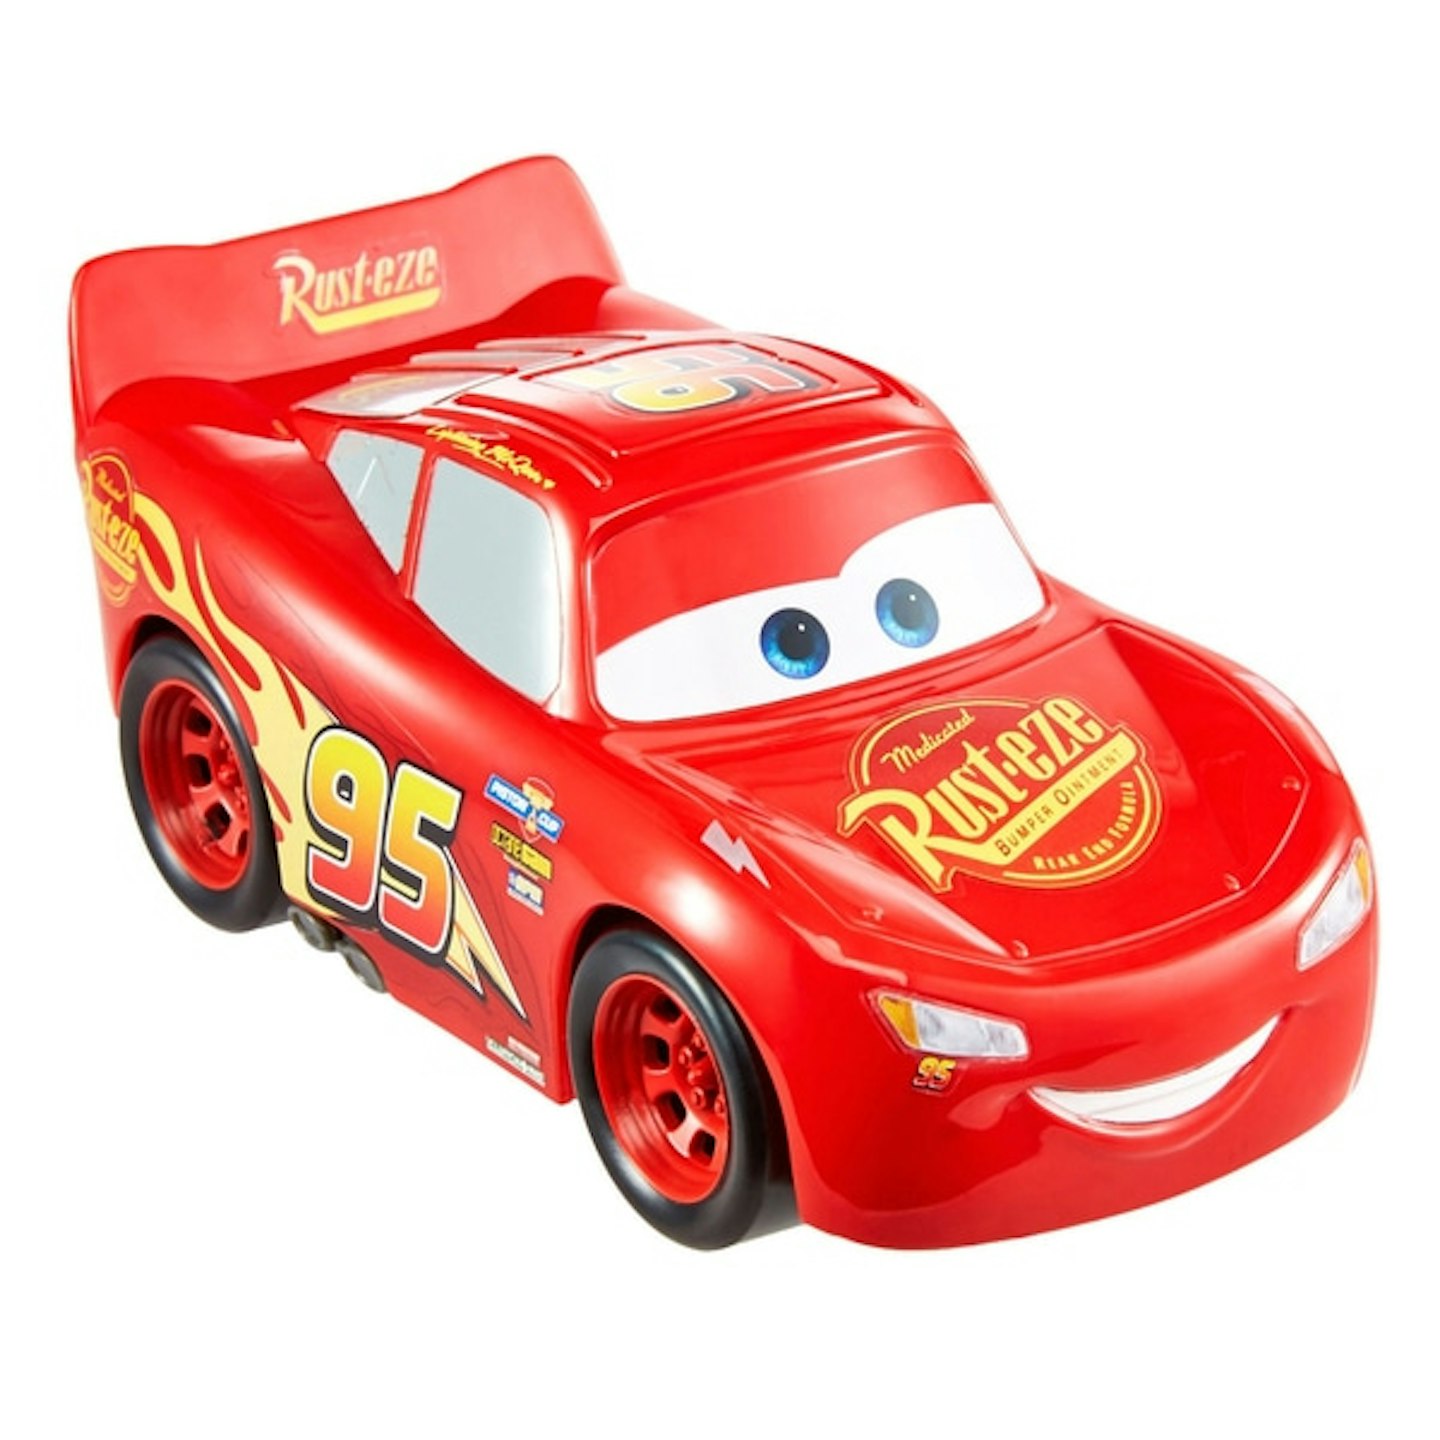 Disney Pixar Cars Track Talkers Lightning McQueen